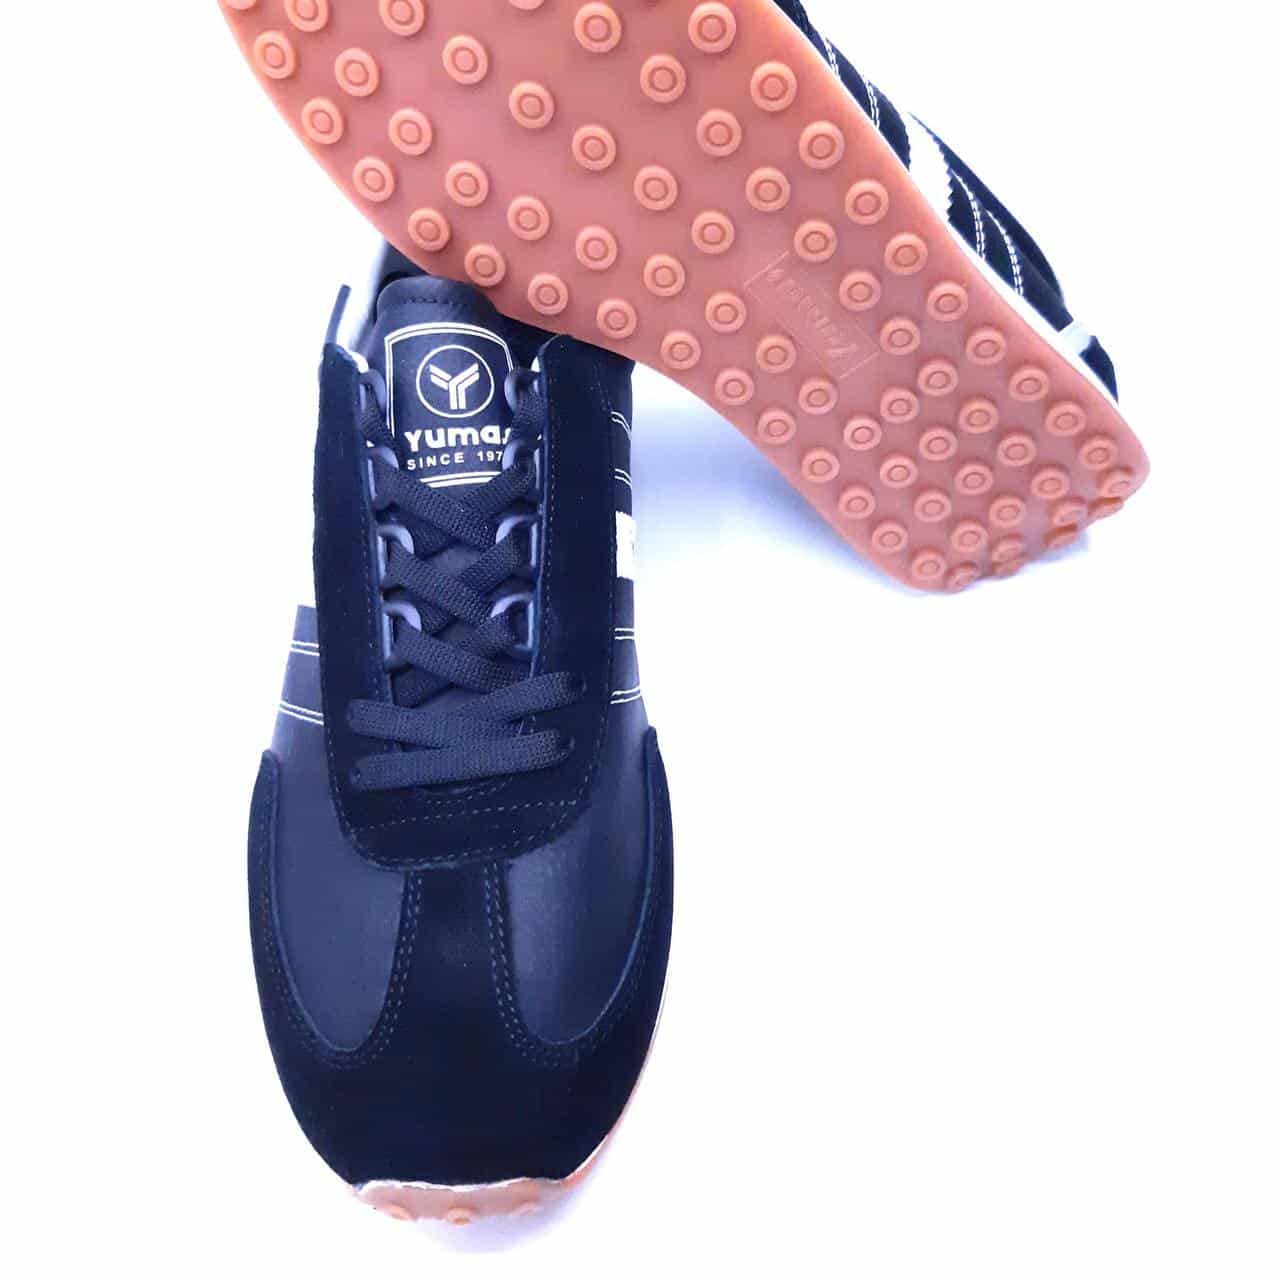 Comprar Online TENIS YUMAS NEW NILO baratos y de calidad de la marca YUMAS, Zapatos low cost